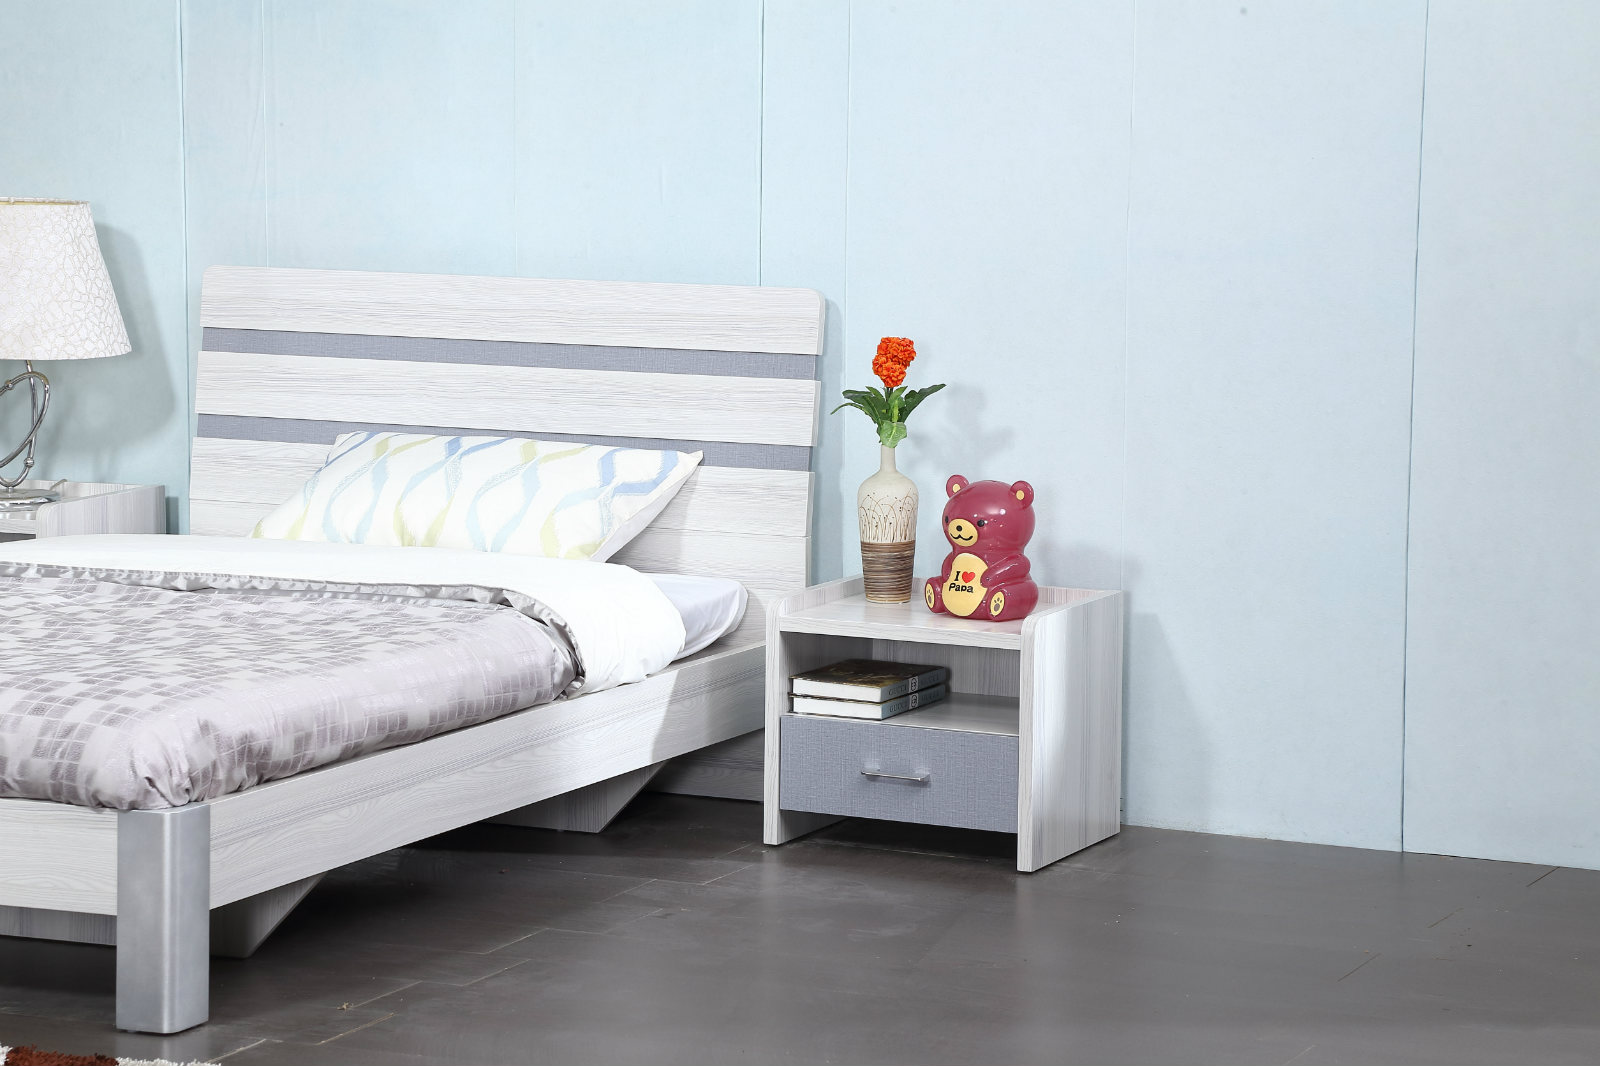 702佳林床头柜现代风格环保床头柜